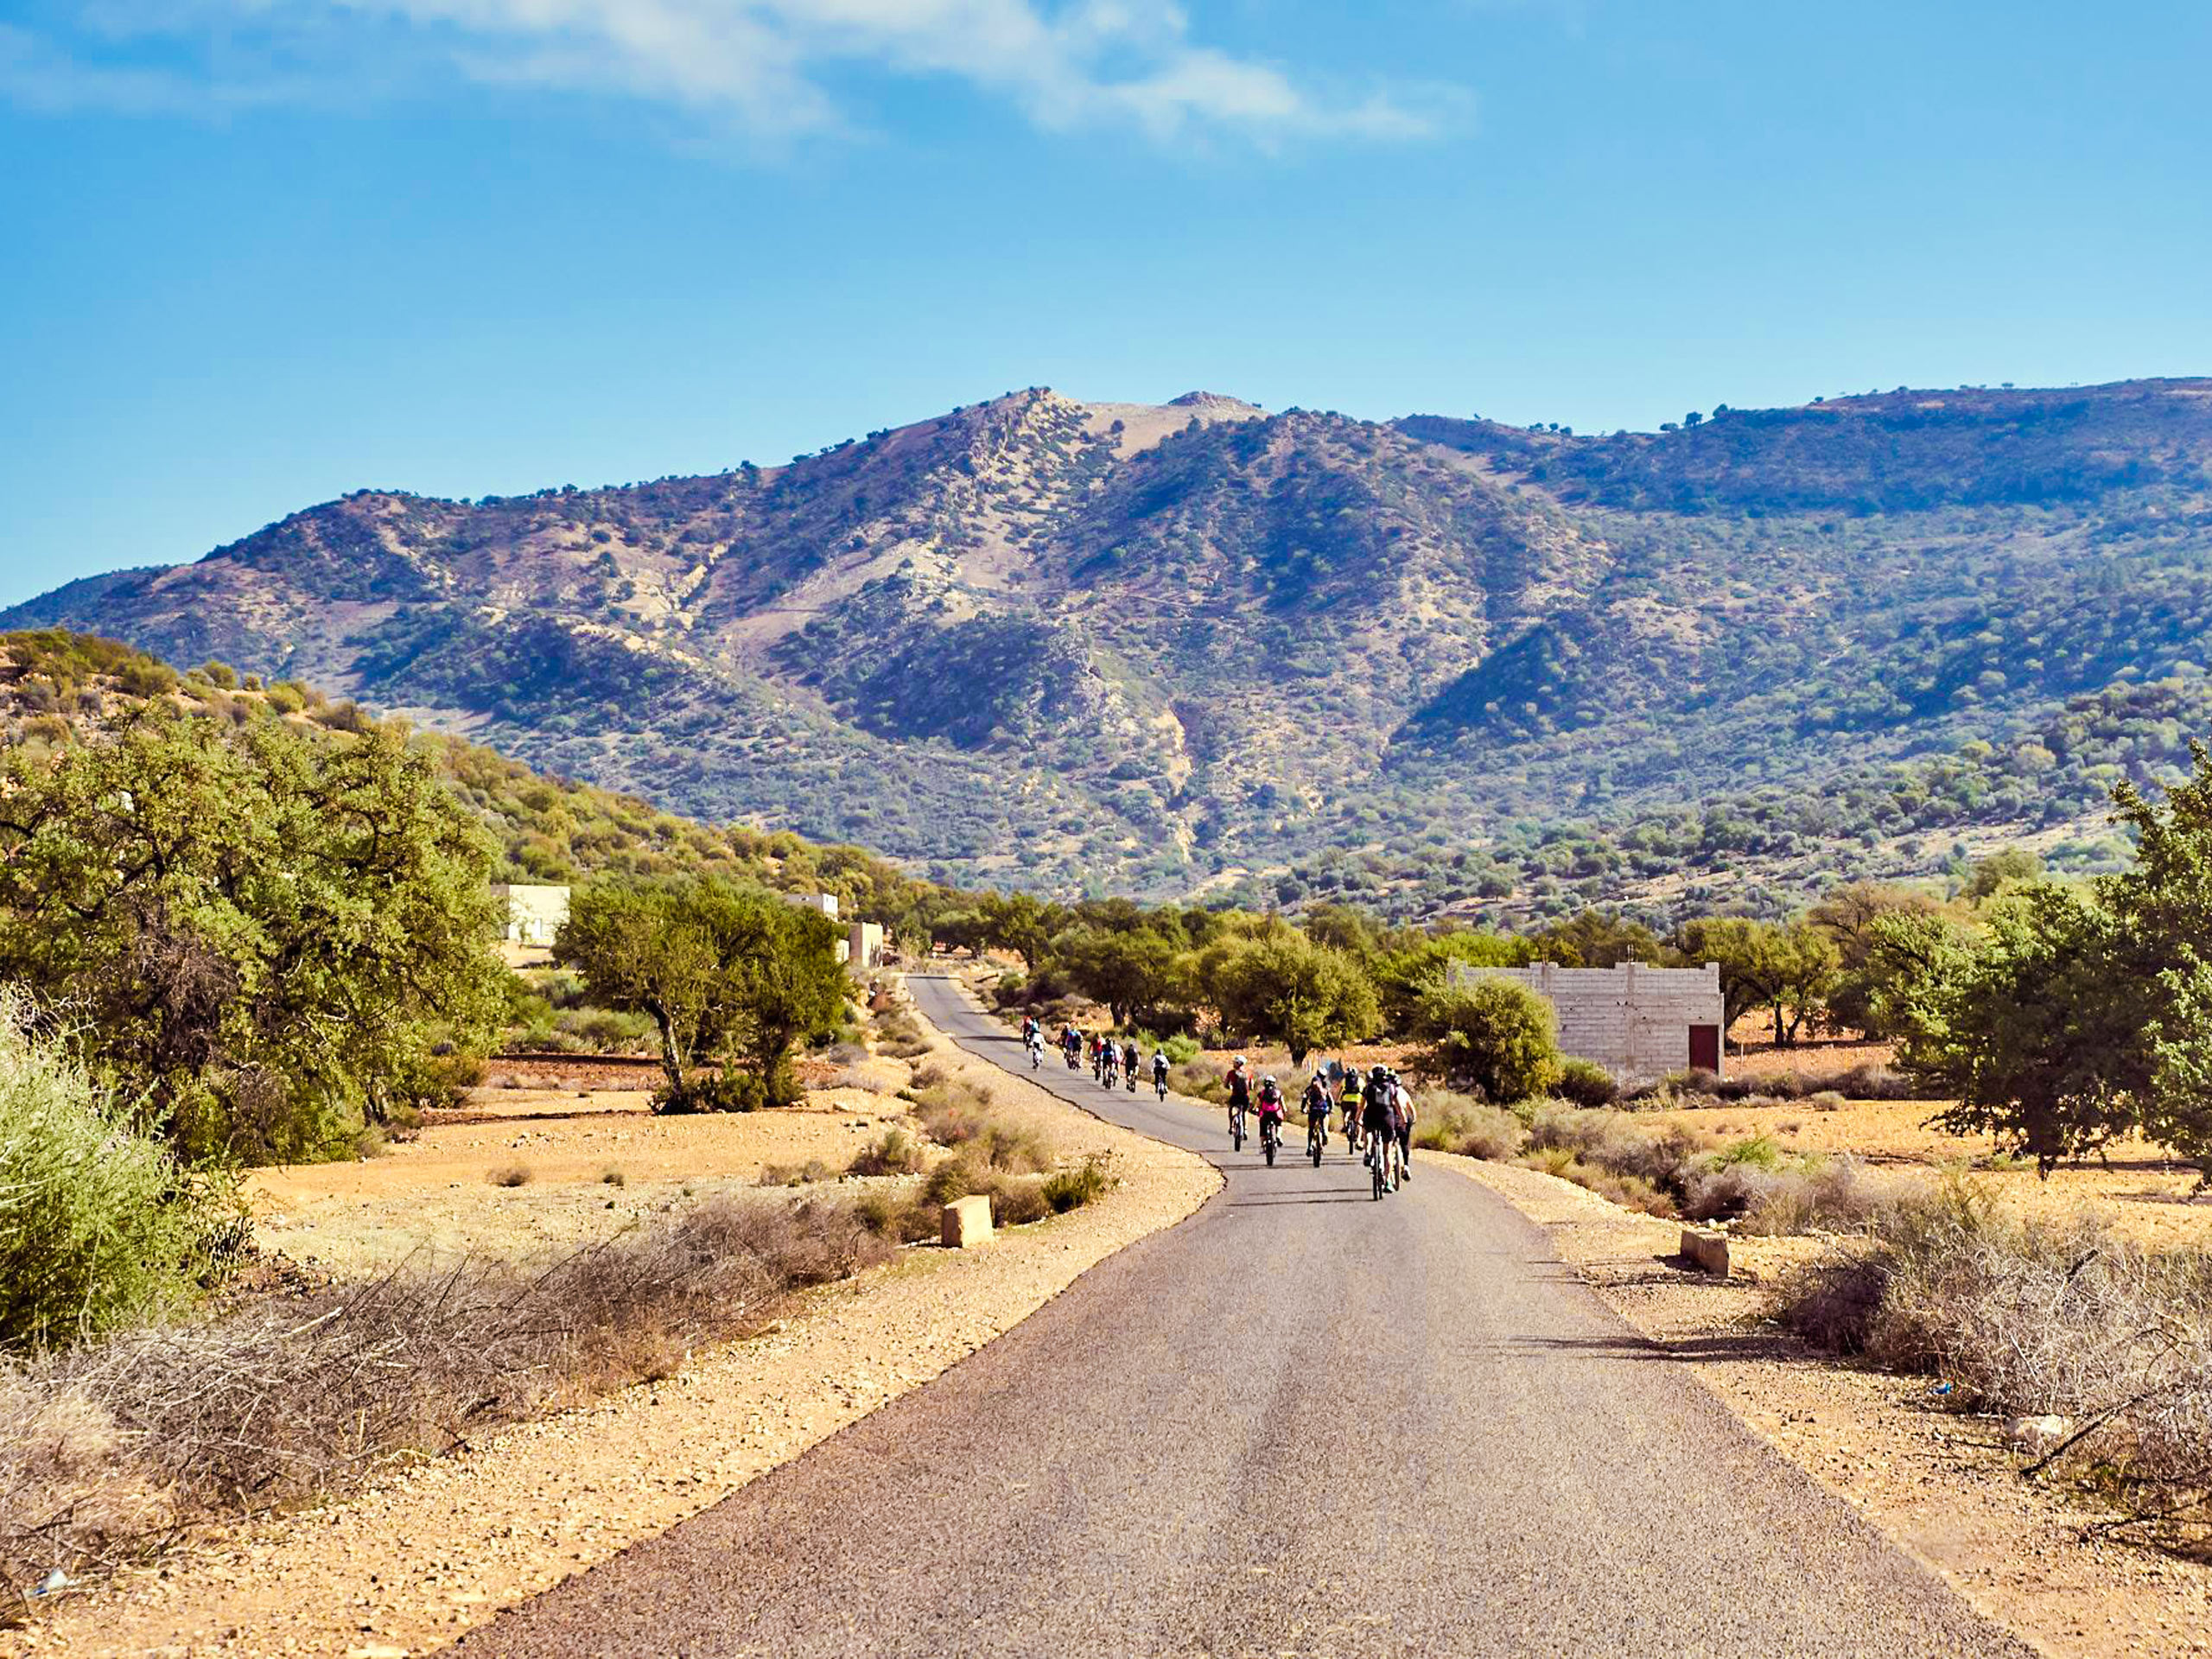 Biking on a desert road